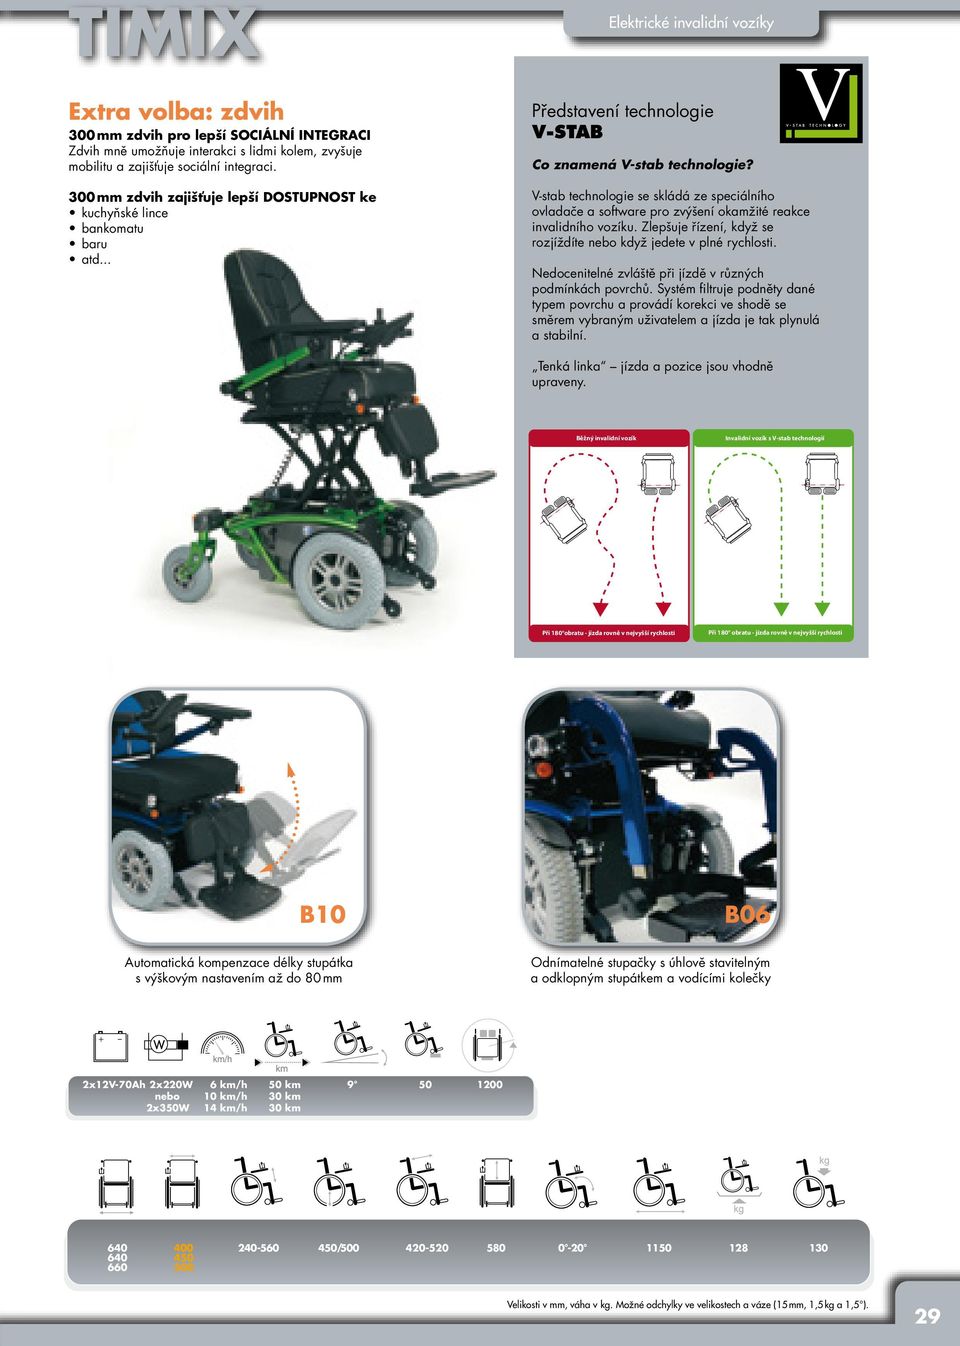 V-stab technologie se skládá ze speciálního ovladače a software pro zvýšení okamžité reakce invalidního vozíku. Zlepšuje řízení, když se rozjíždíte nebo když jedete v plné rychlosti.